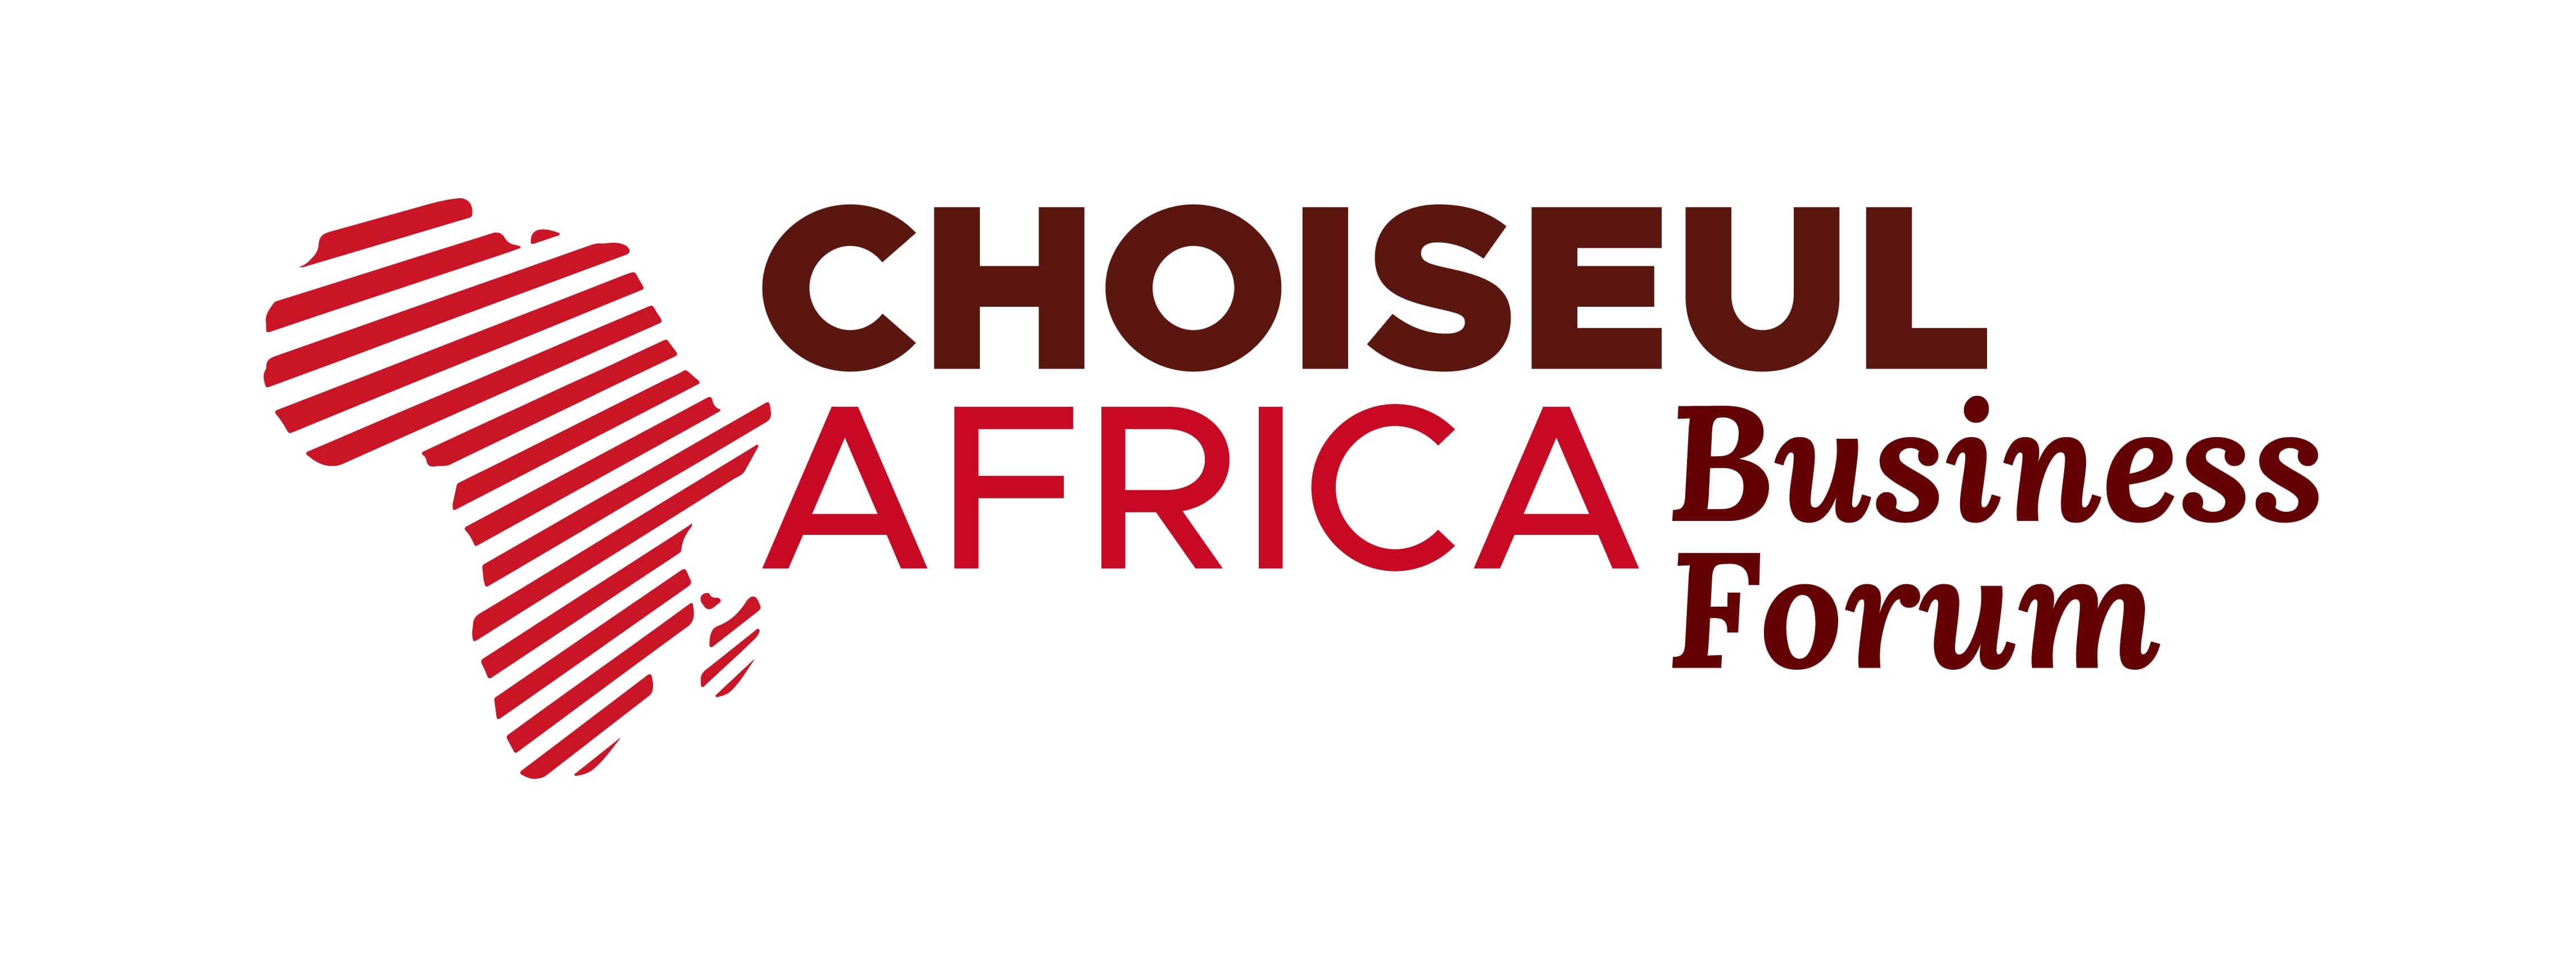 Choiseul Africa Business Forum de retour en octobre pour une troisième édition